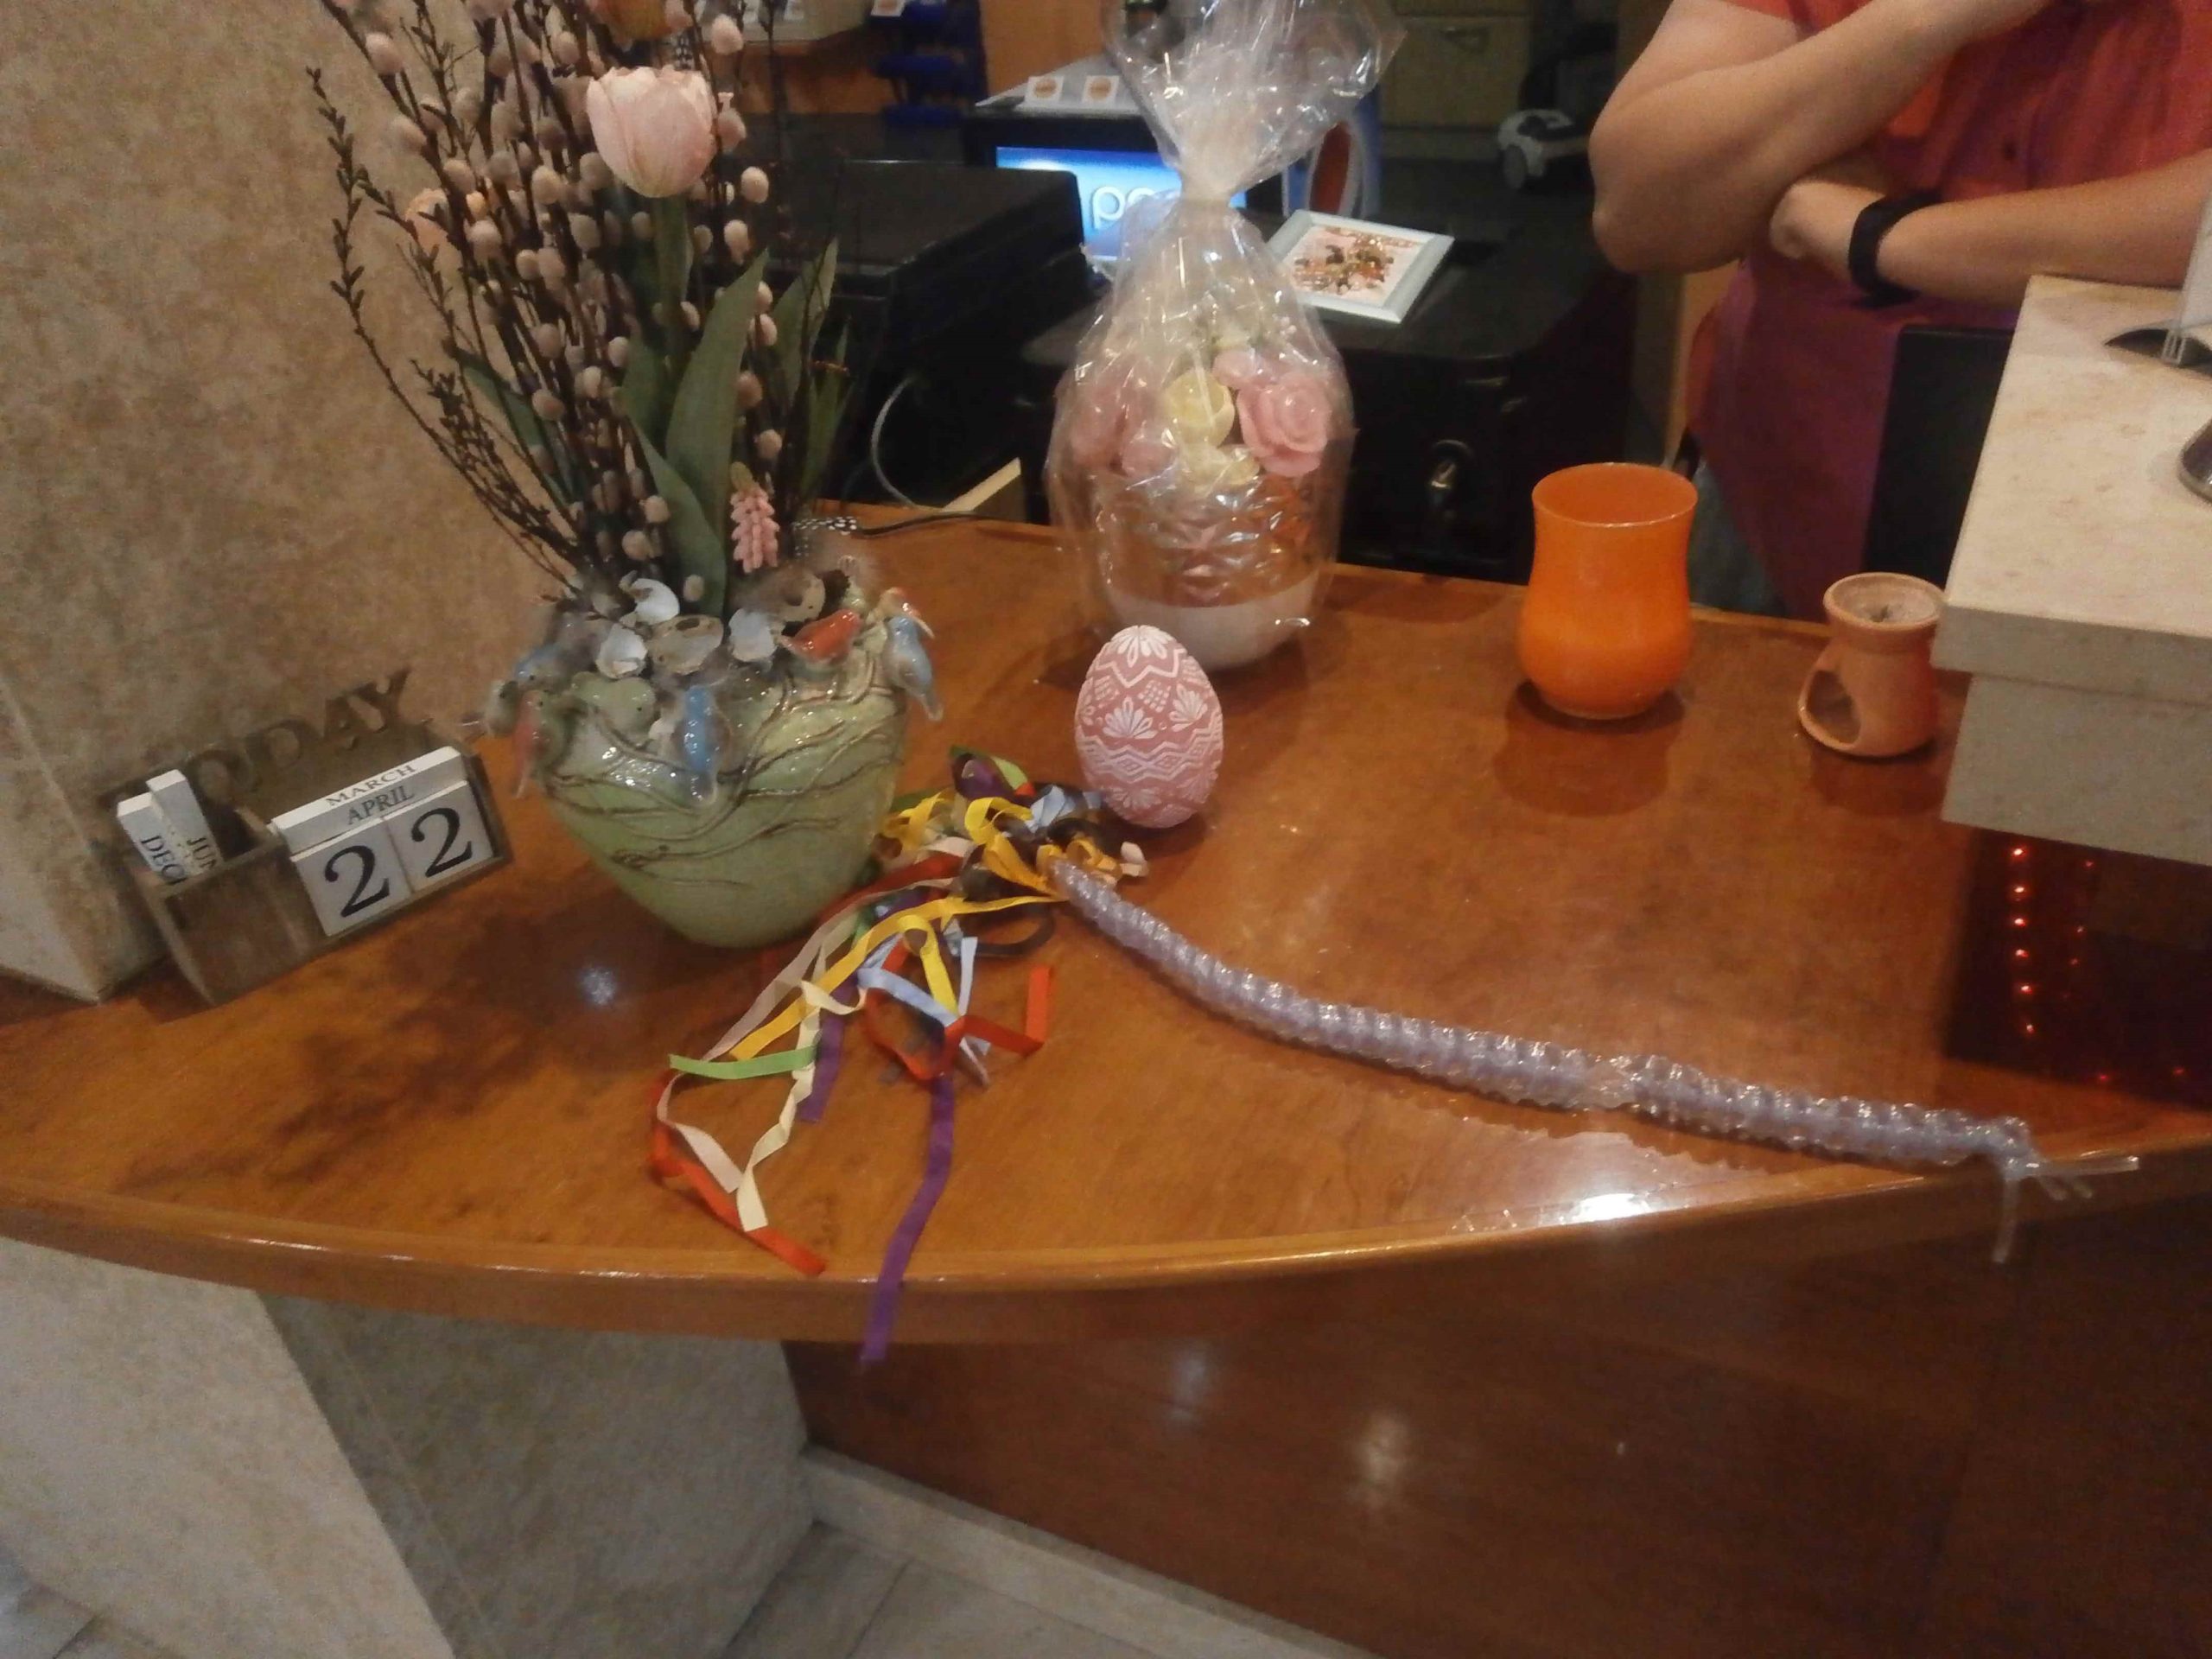 Stôl na ktorom je váza s veľkonočnou výzdobou, vedľa ktorej leží korbáč, ktorý je vyrobený s inhalačných hadičiek, zdobený farebnými stužkami.